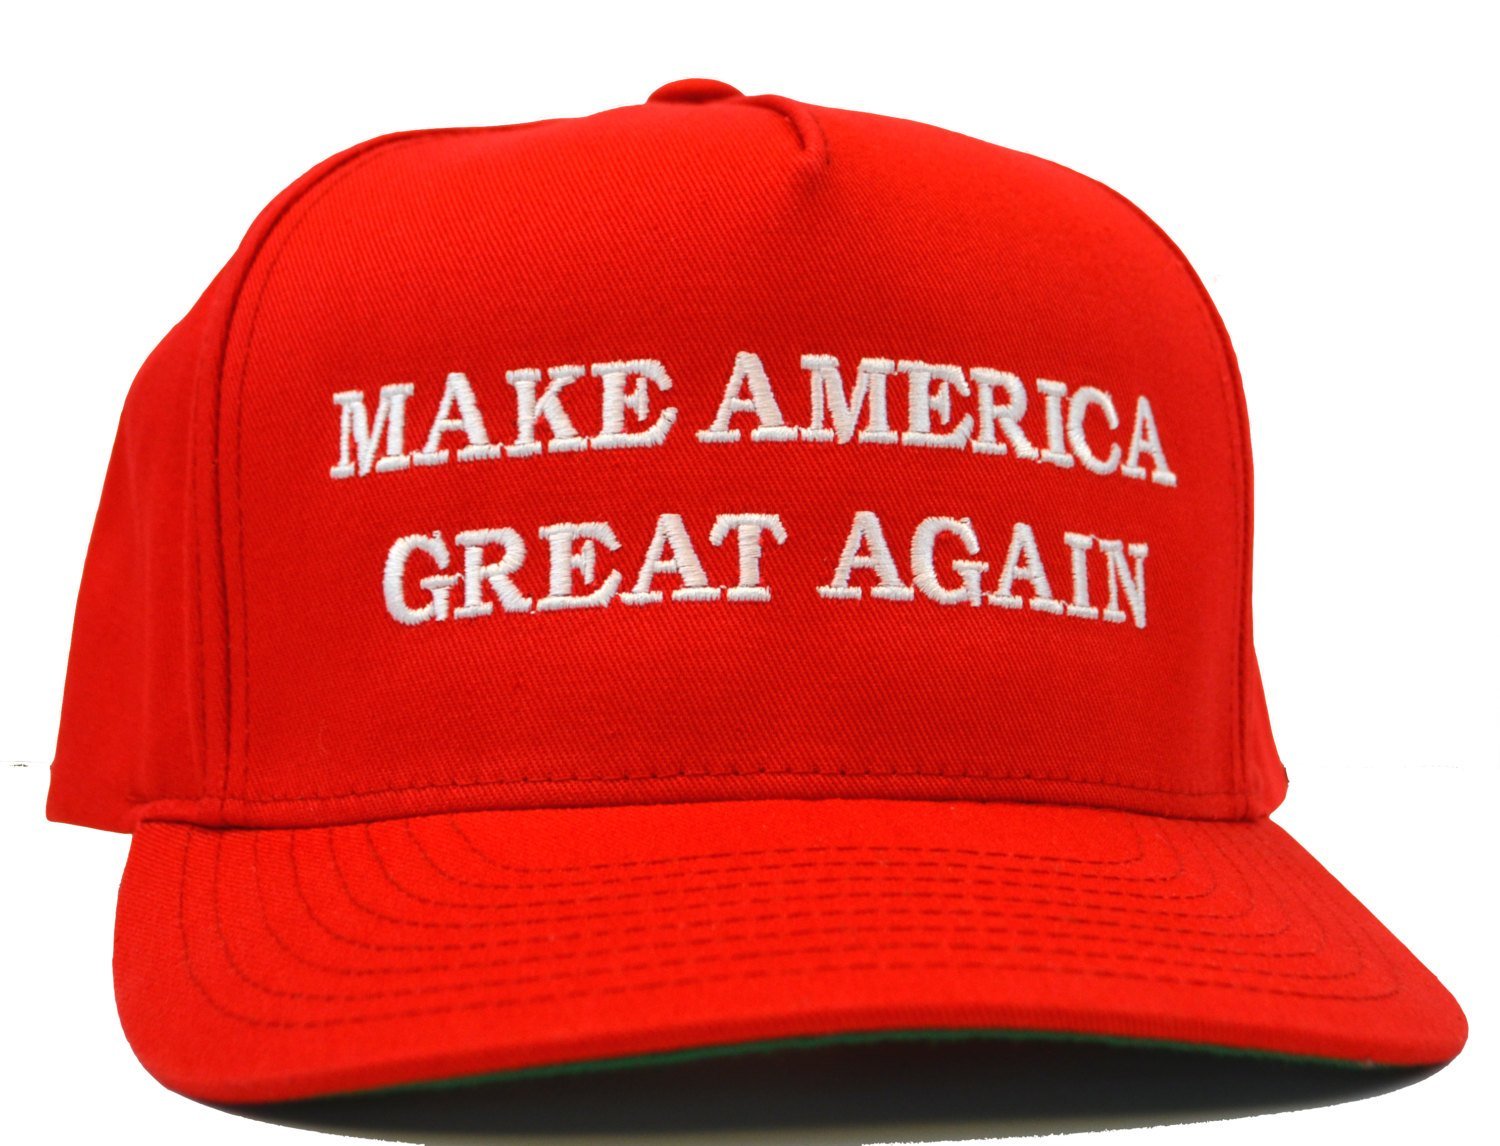 Replay Lincoln Park bans MAGA hats.